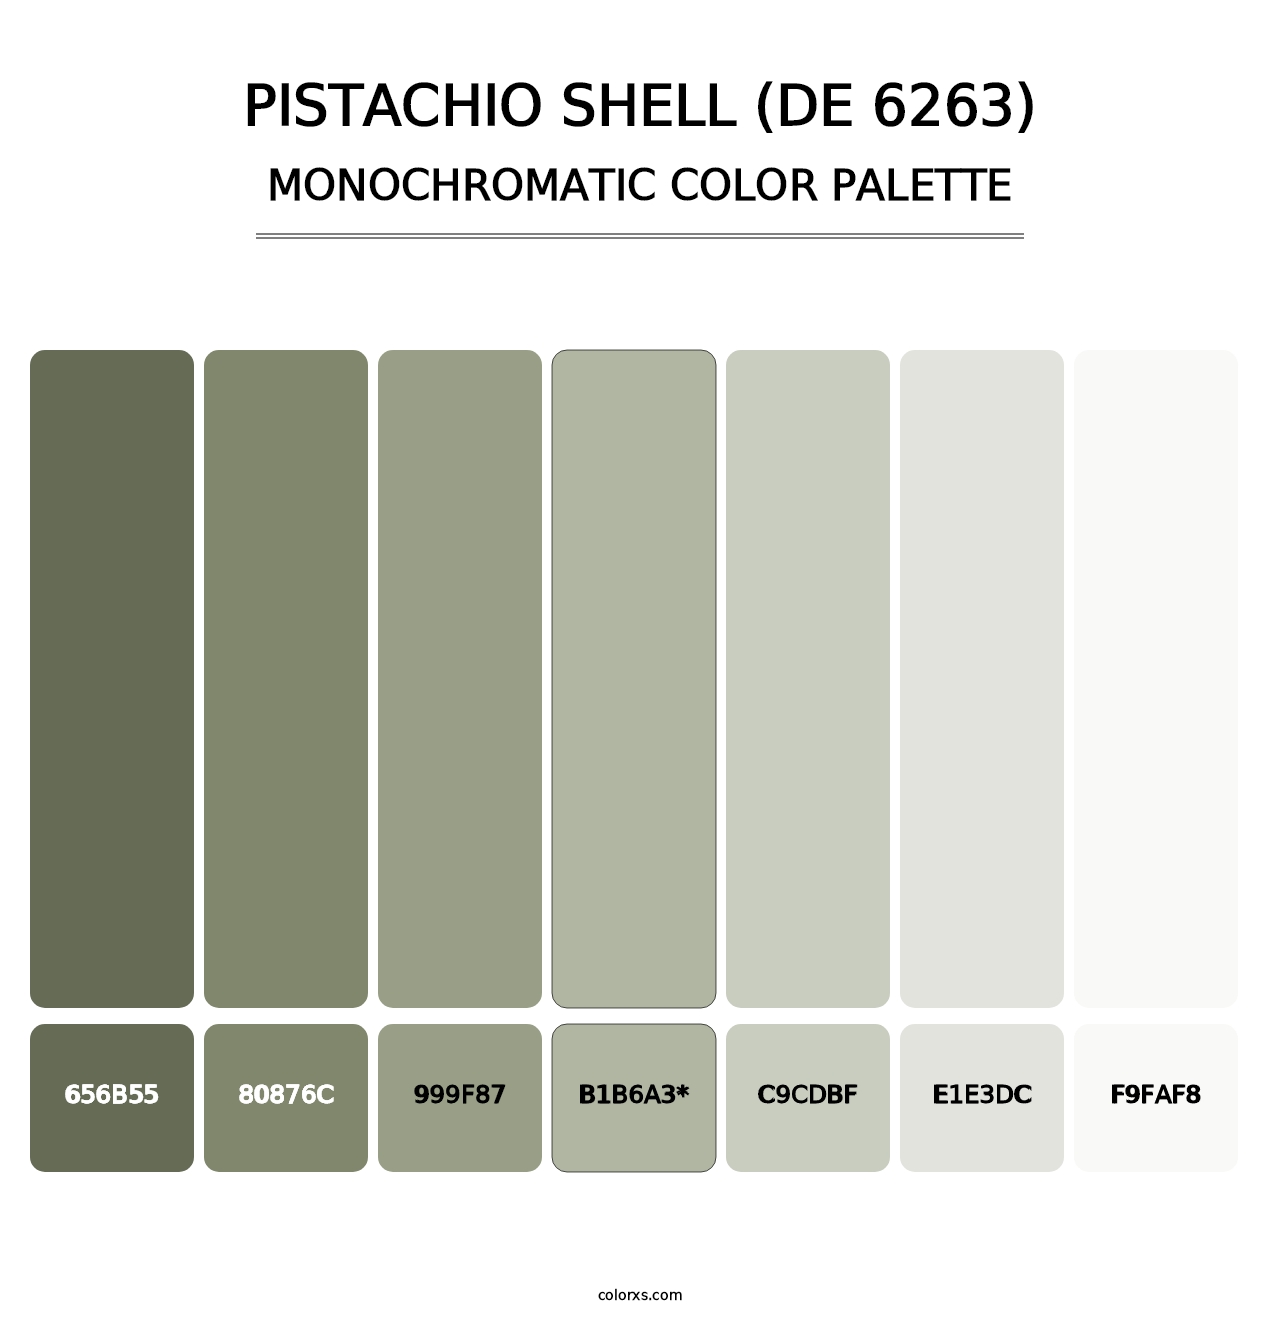 Pistachio Shell (DE 6263) - Monochromatic Color Palette